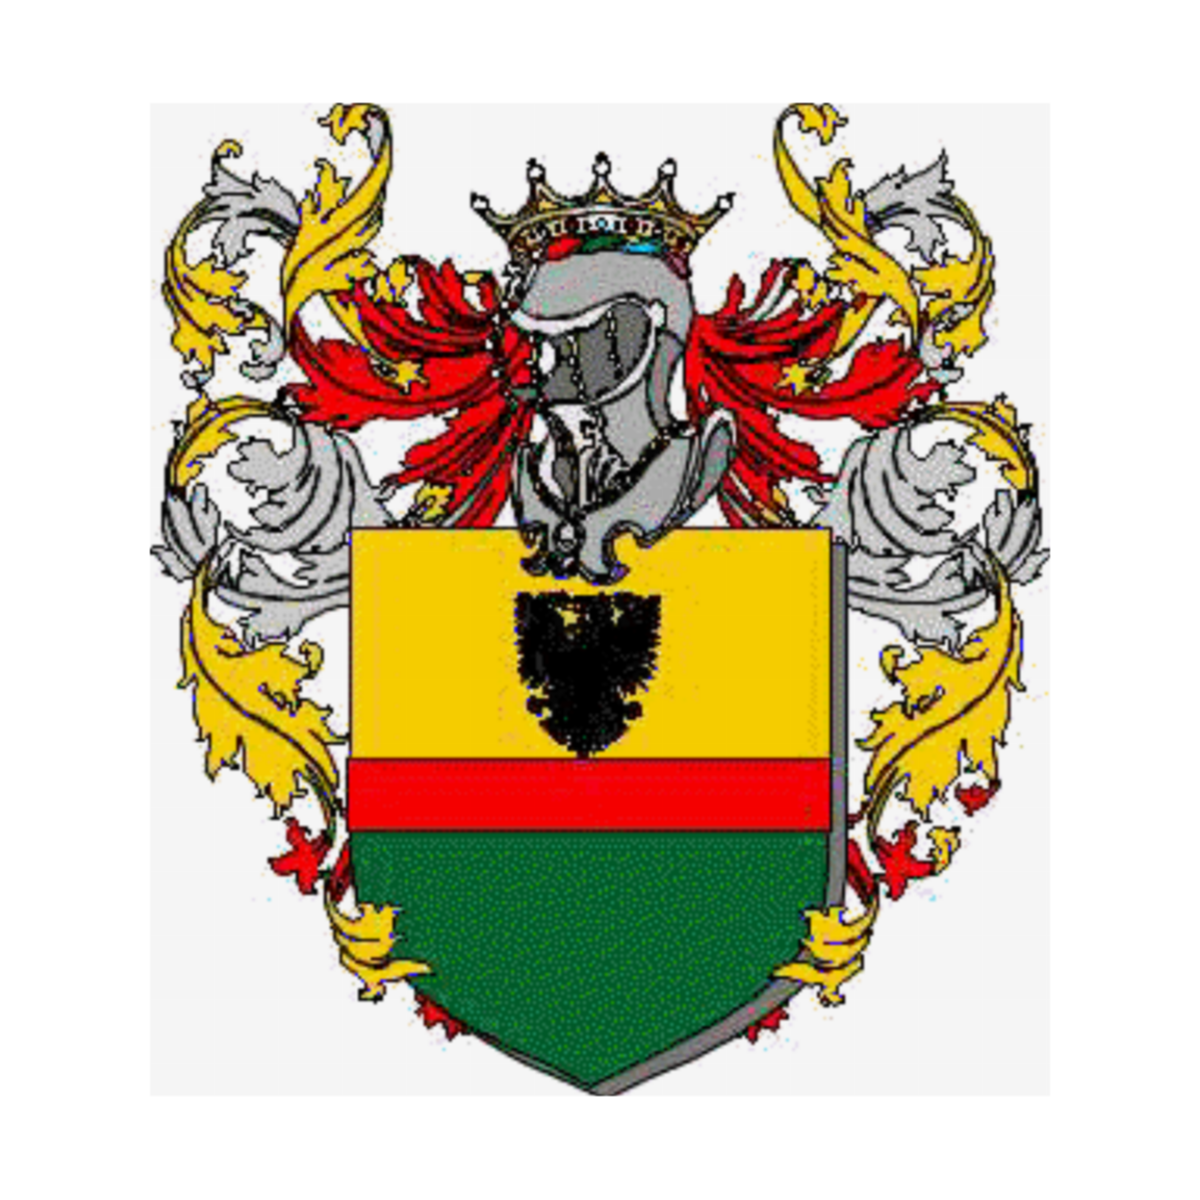 Wappen der Familie Ubaldini Degli Orci